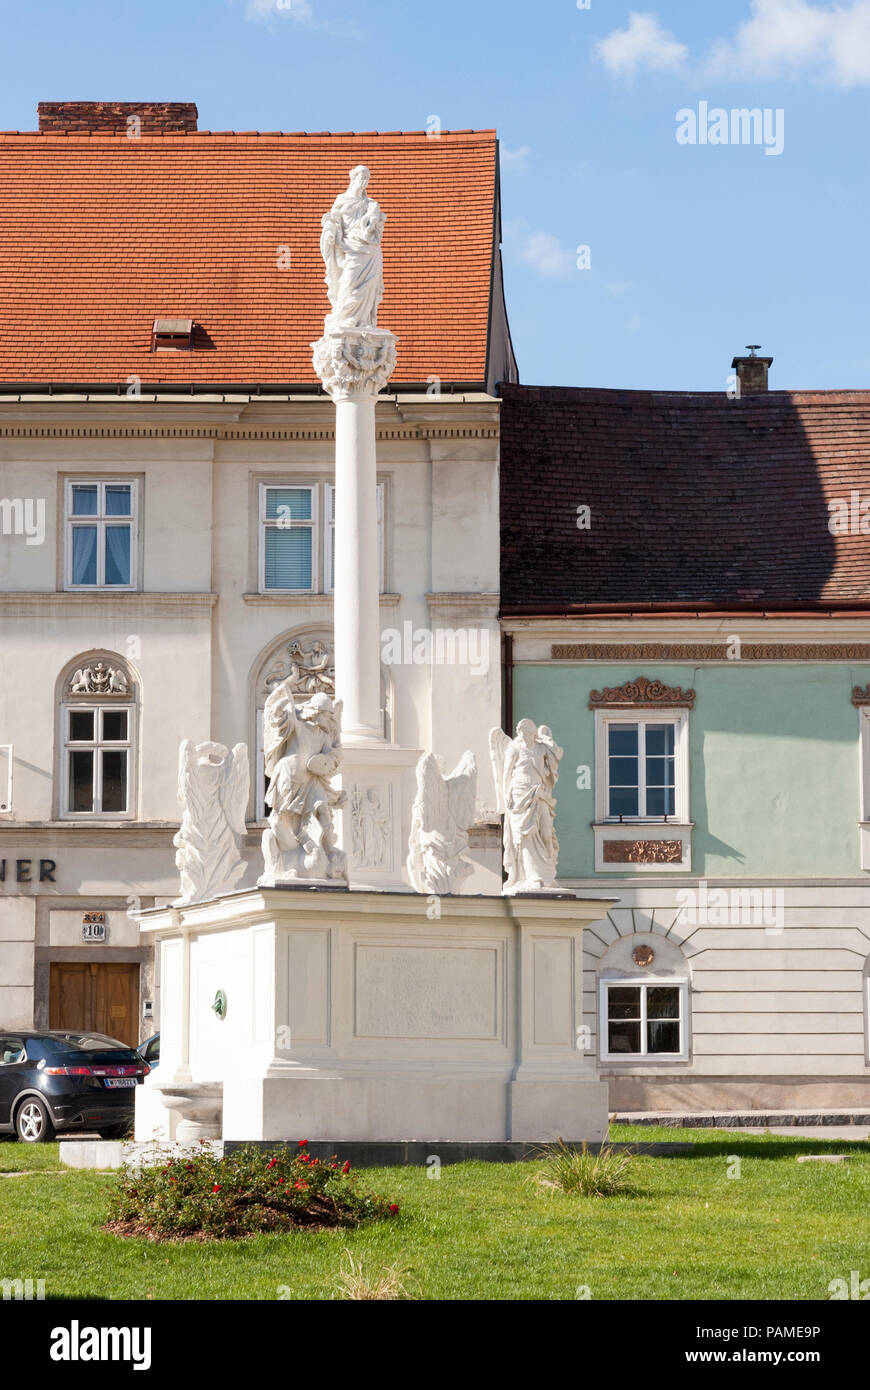 Questo Mariensäule (colonna mariana) fu eretto nel 1688 e viene attribuita a Andreas Krimmer. Krems centro storico, Austria inferiore Foto Stock